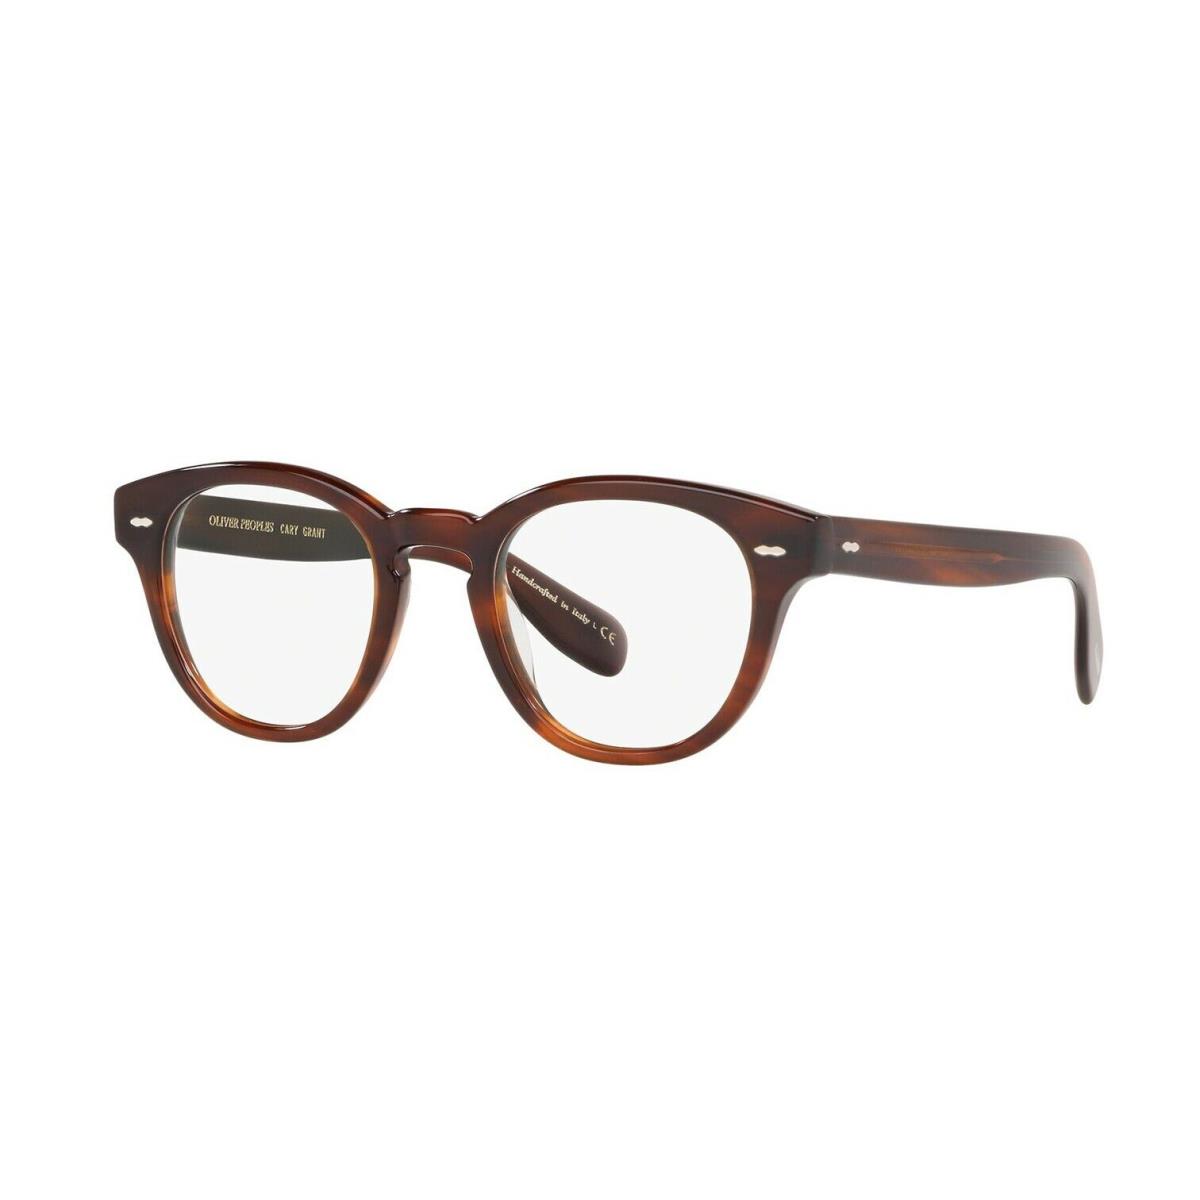 Oliver Peoples Cary Grant OV 5413U Grant Tortoise 1679 Eyeglasses